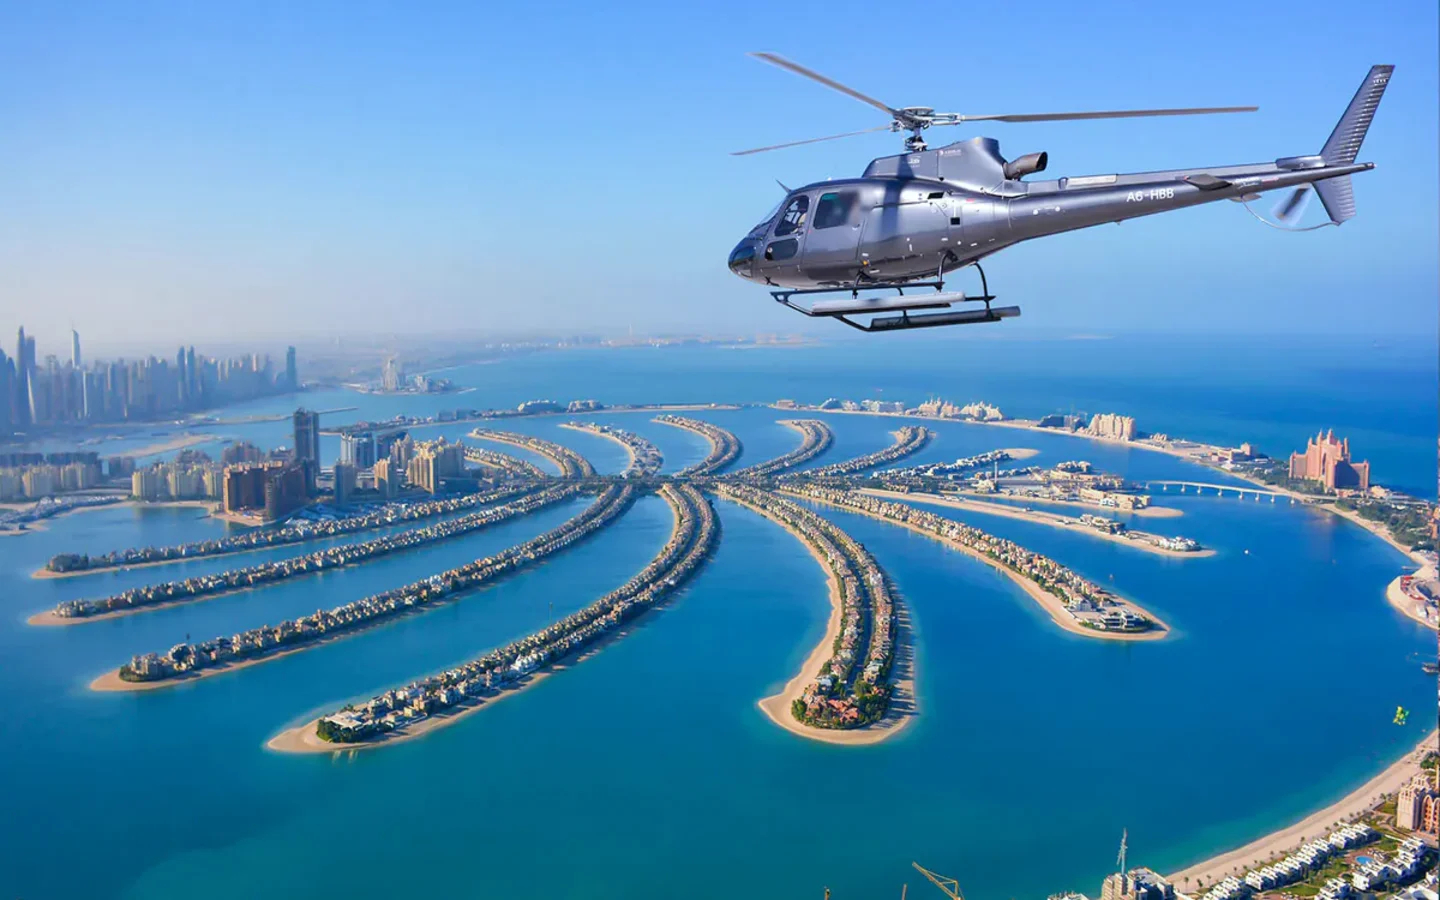 The Sky Tourism Dubai